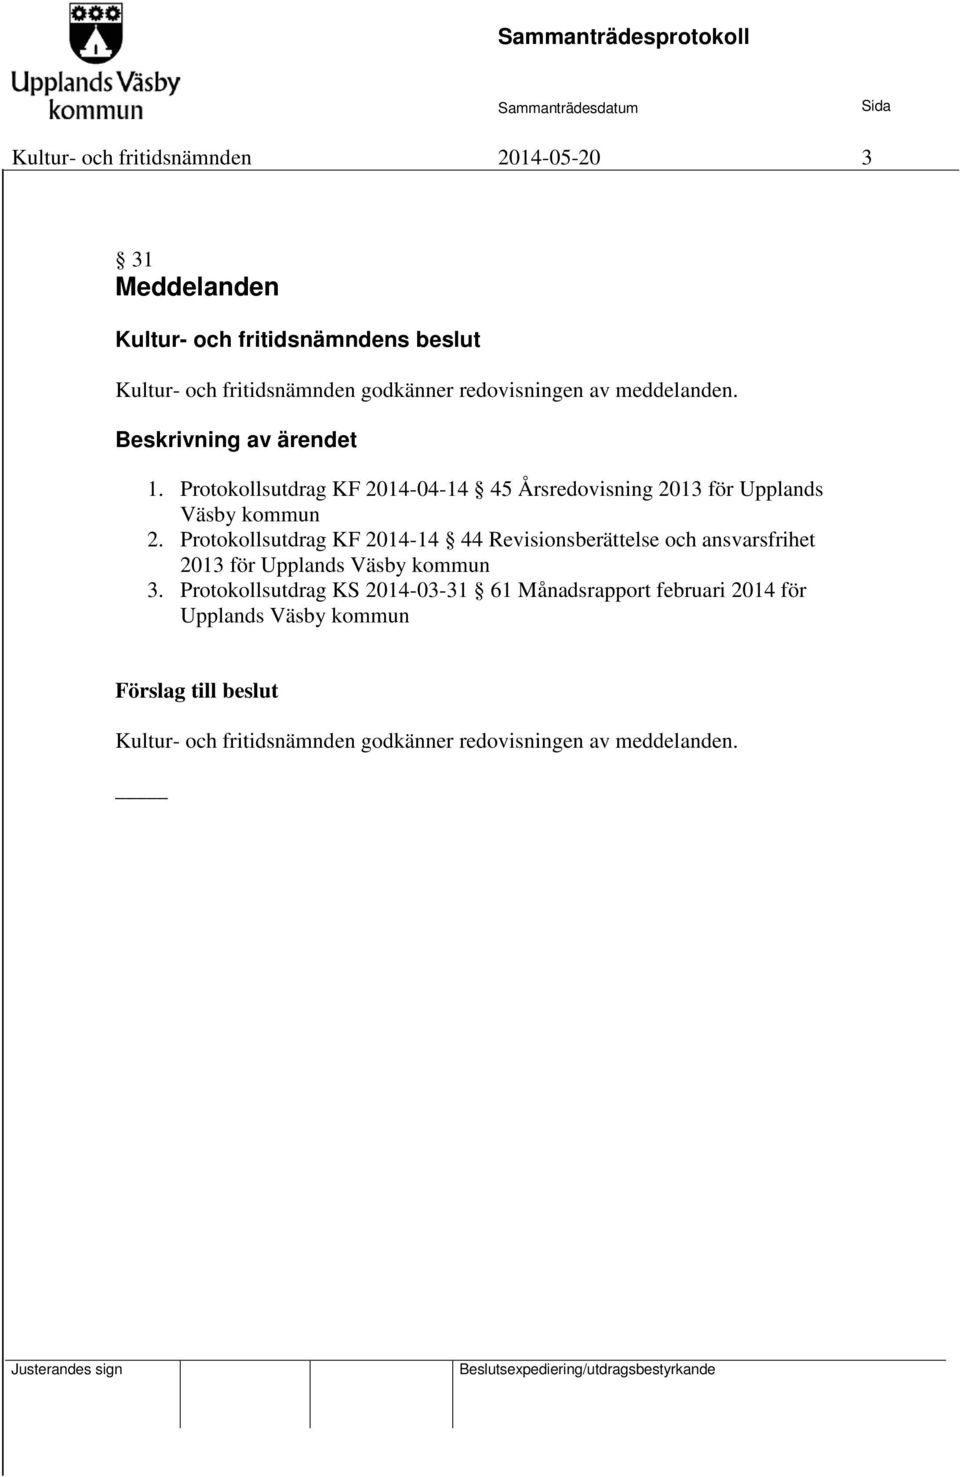 Protokollsutdrag KF 2014-04-14 45 Årsredovisning 2013 för Upplands Väsby kommun 2.